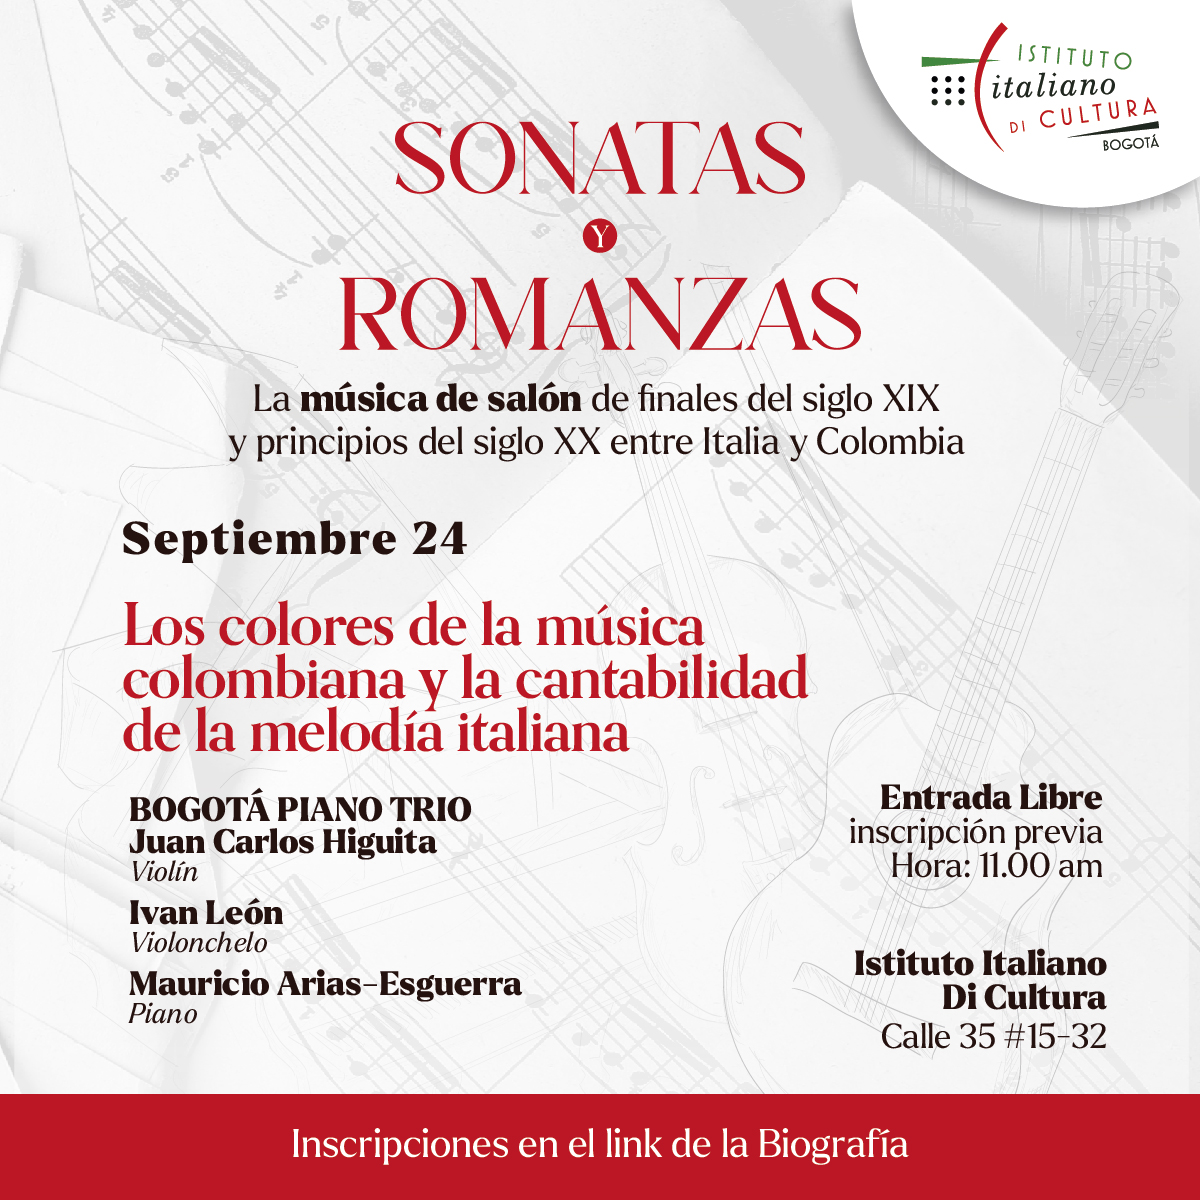 Domingo 24 de septiembre de 2023 a las 11:00 a.m. en el Istituto Italiano di Cultura